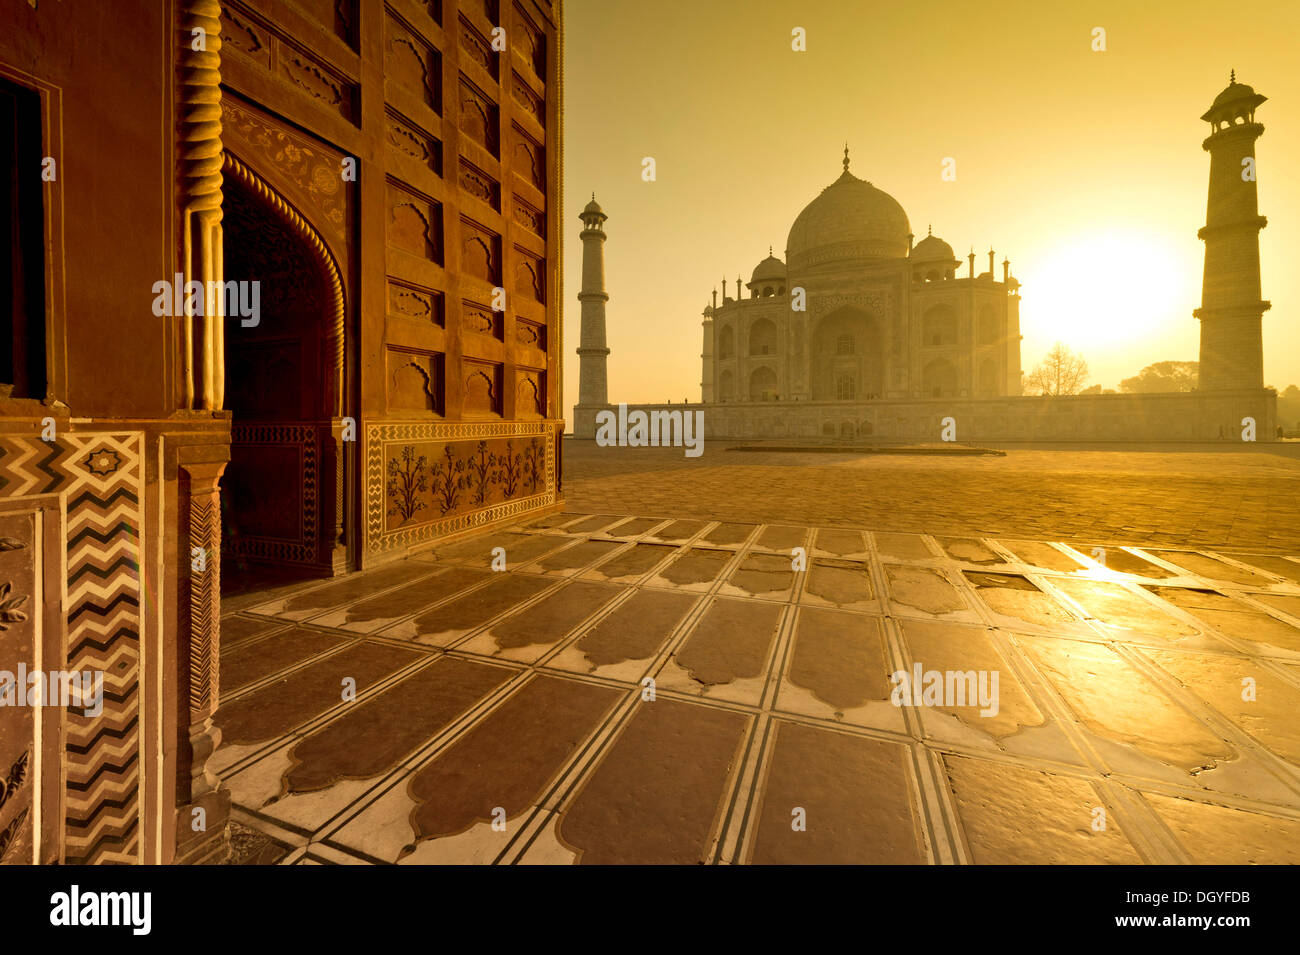 Taj Mahal, mausolée, UNESCO World Heritage Site, au lever du soleil, Agra, Uttar Pradesh, Inde Banque D'Images